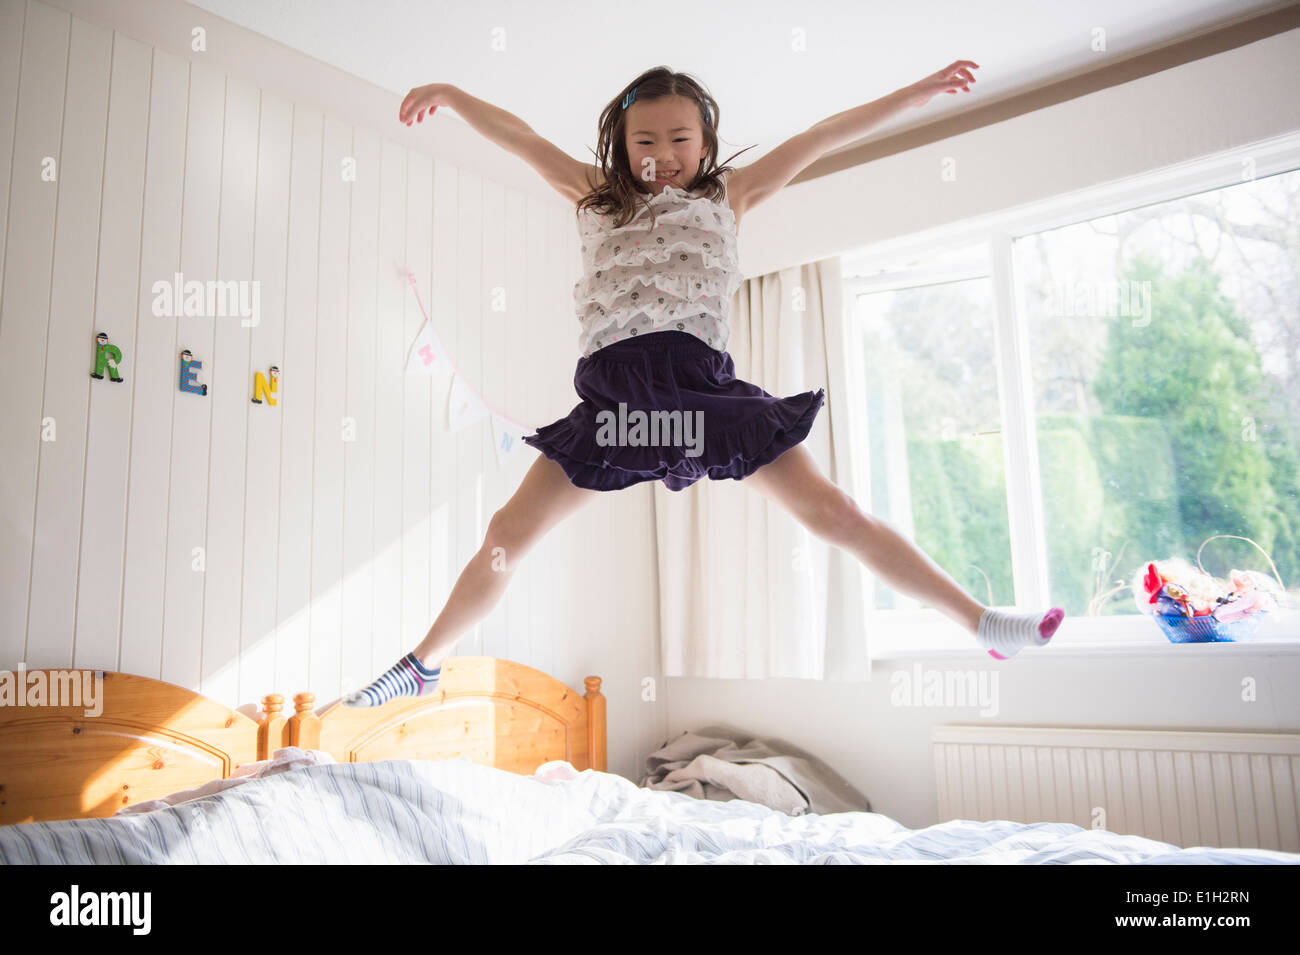 Junges Mädchen springen Luft auf Bett Stockfoto